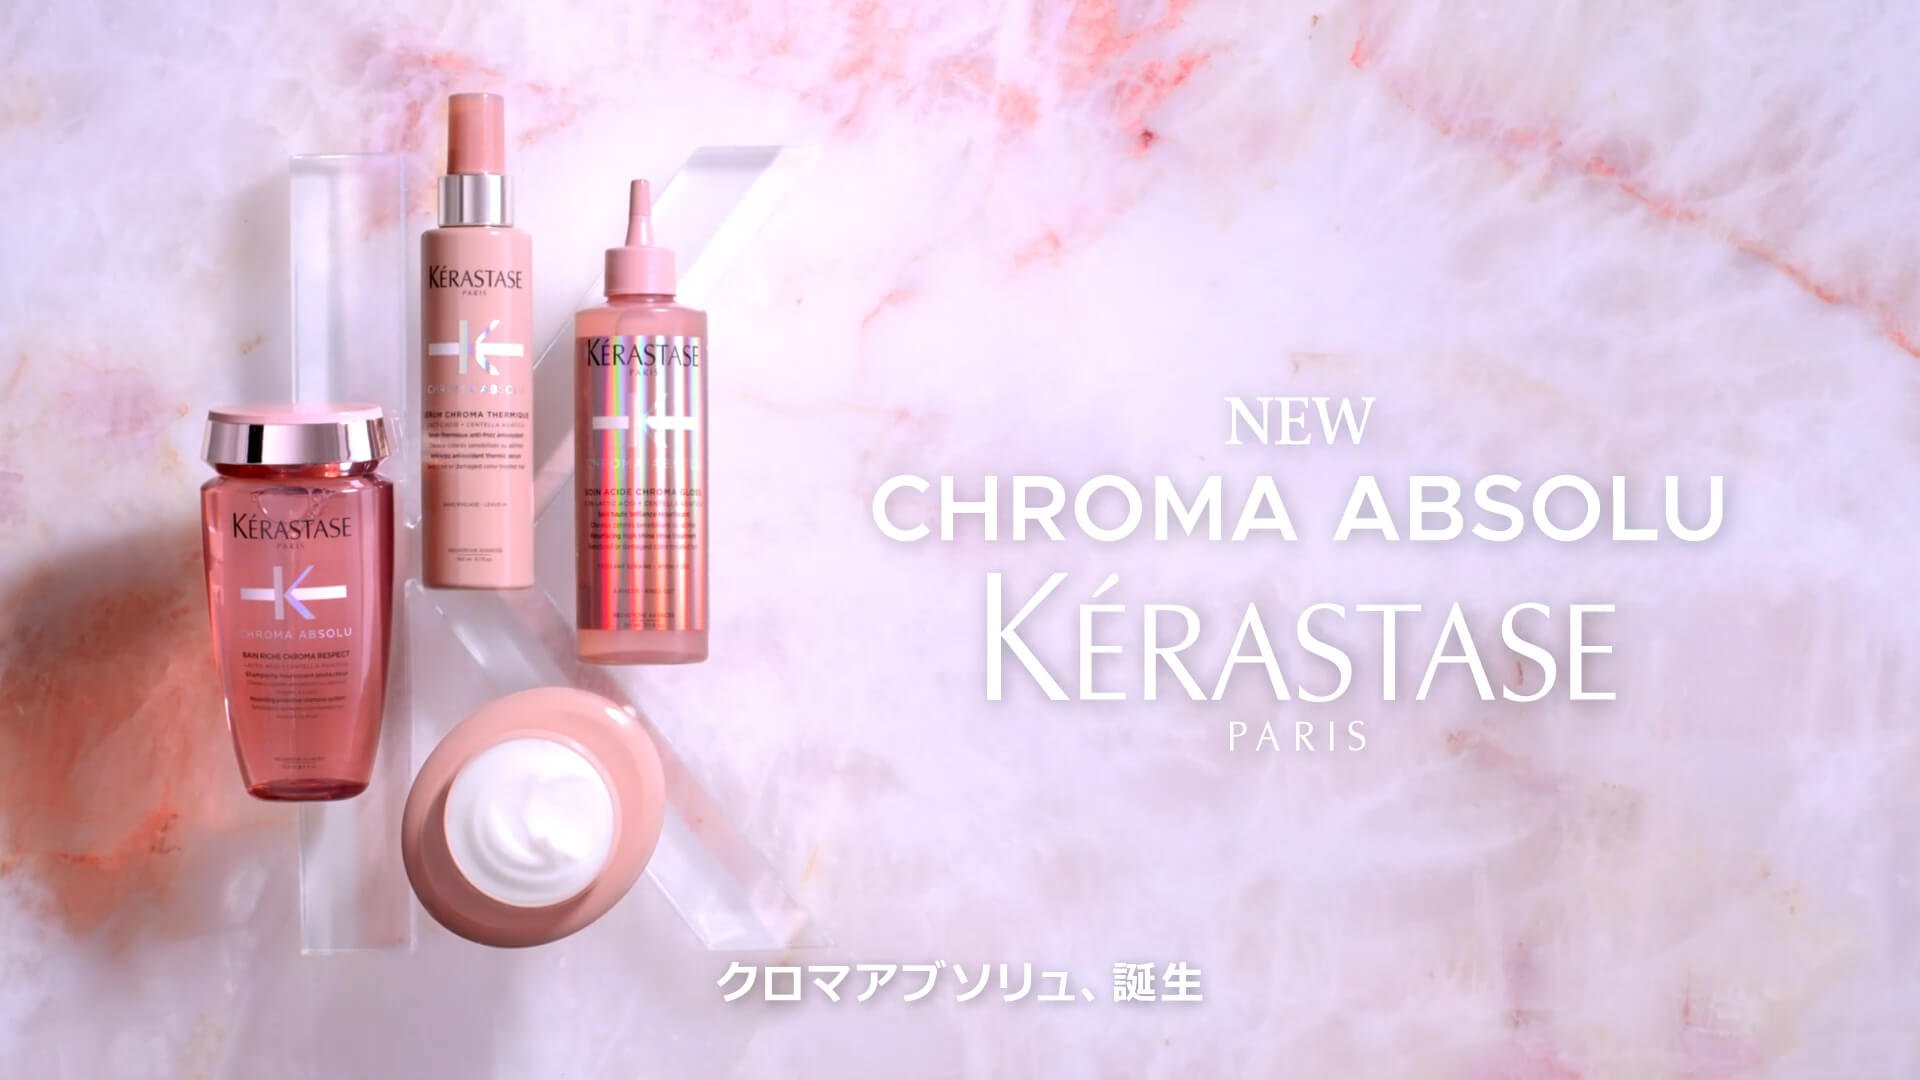 クロマアブソリュ - Care for your hair - ケラスターゼ公式サイト 